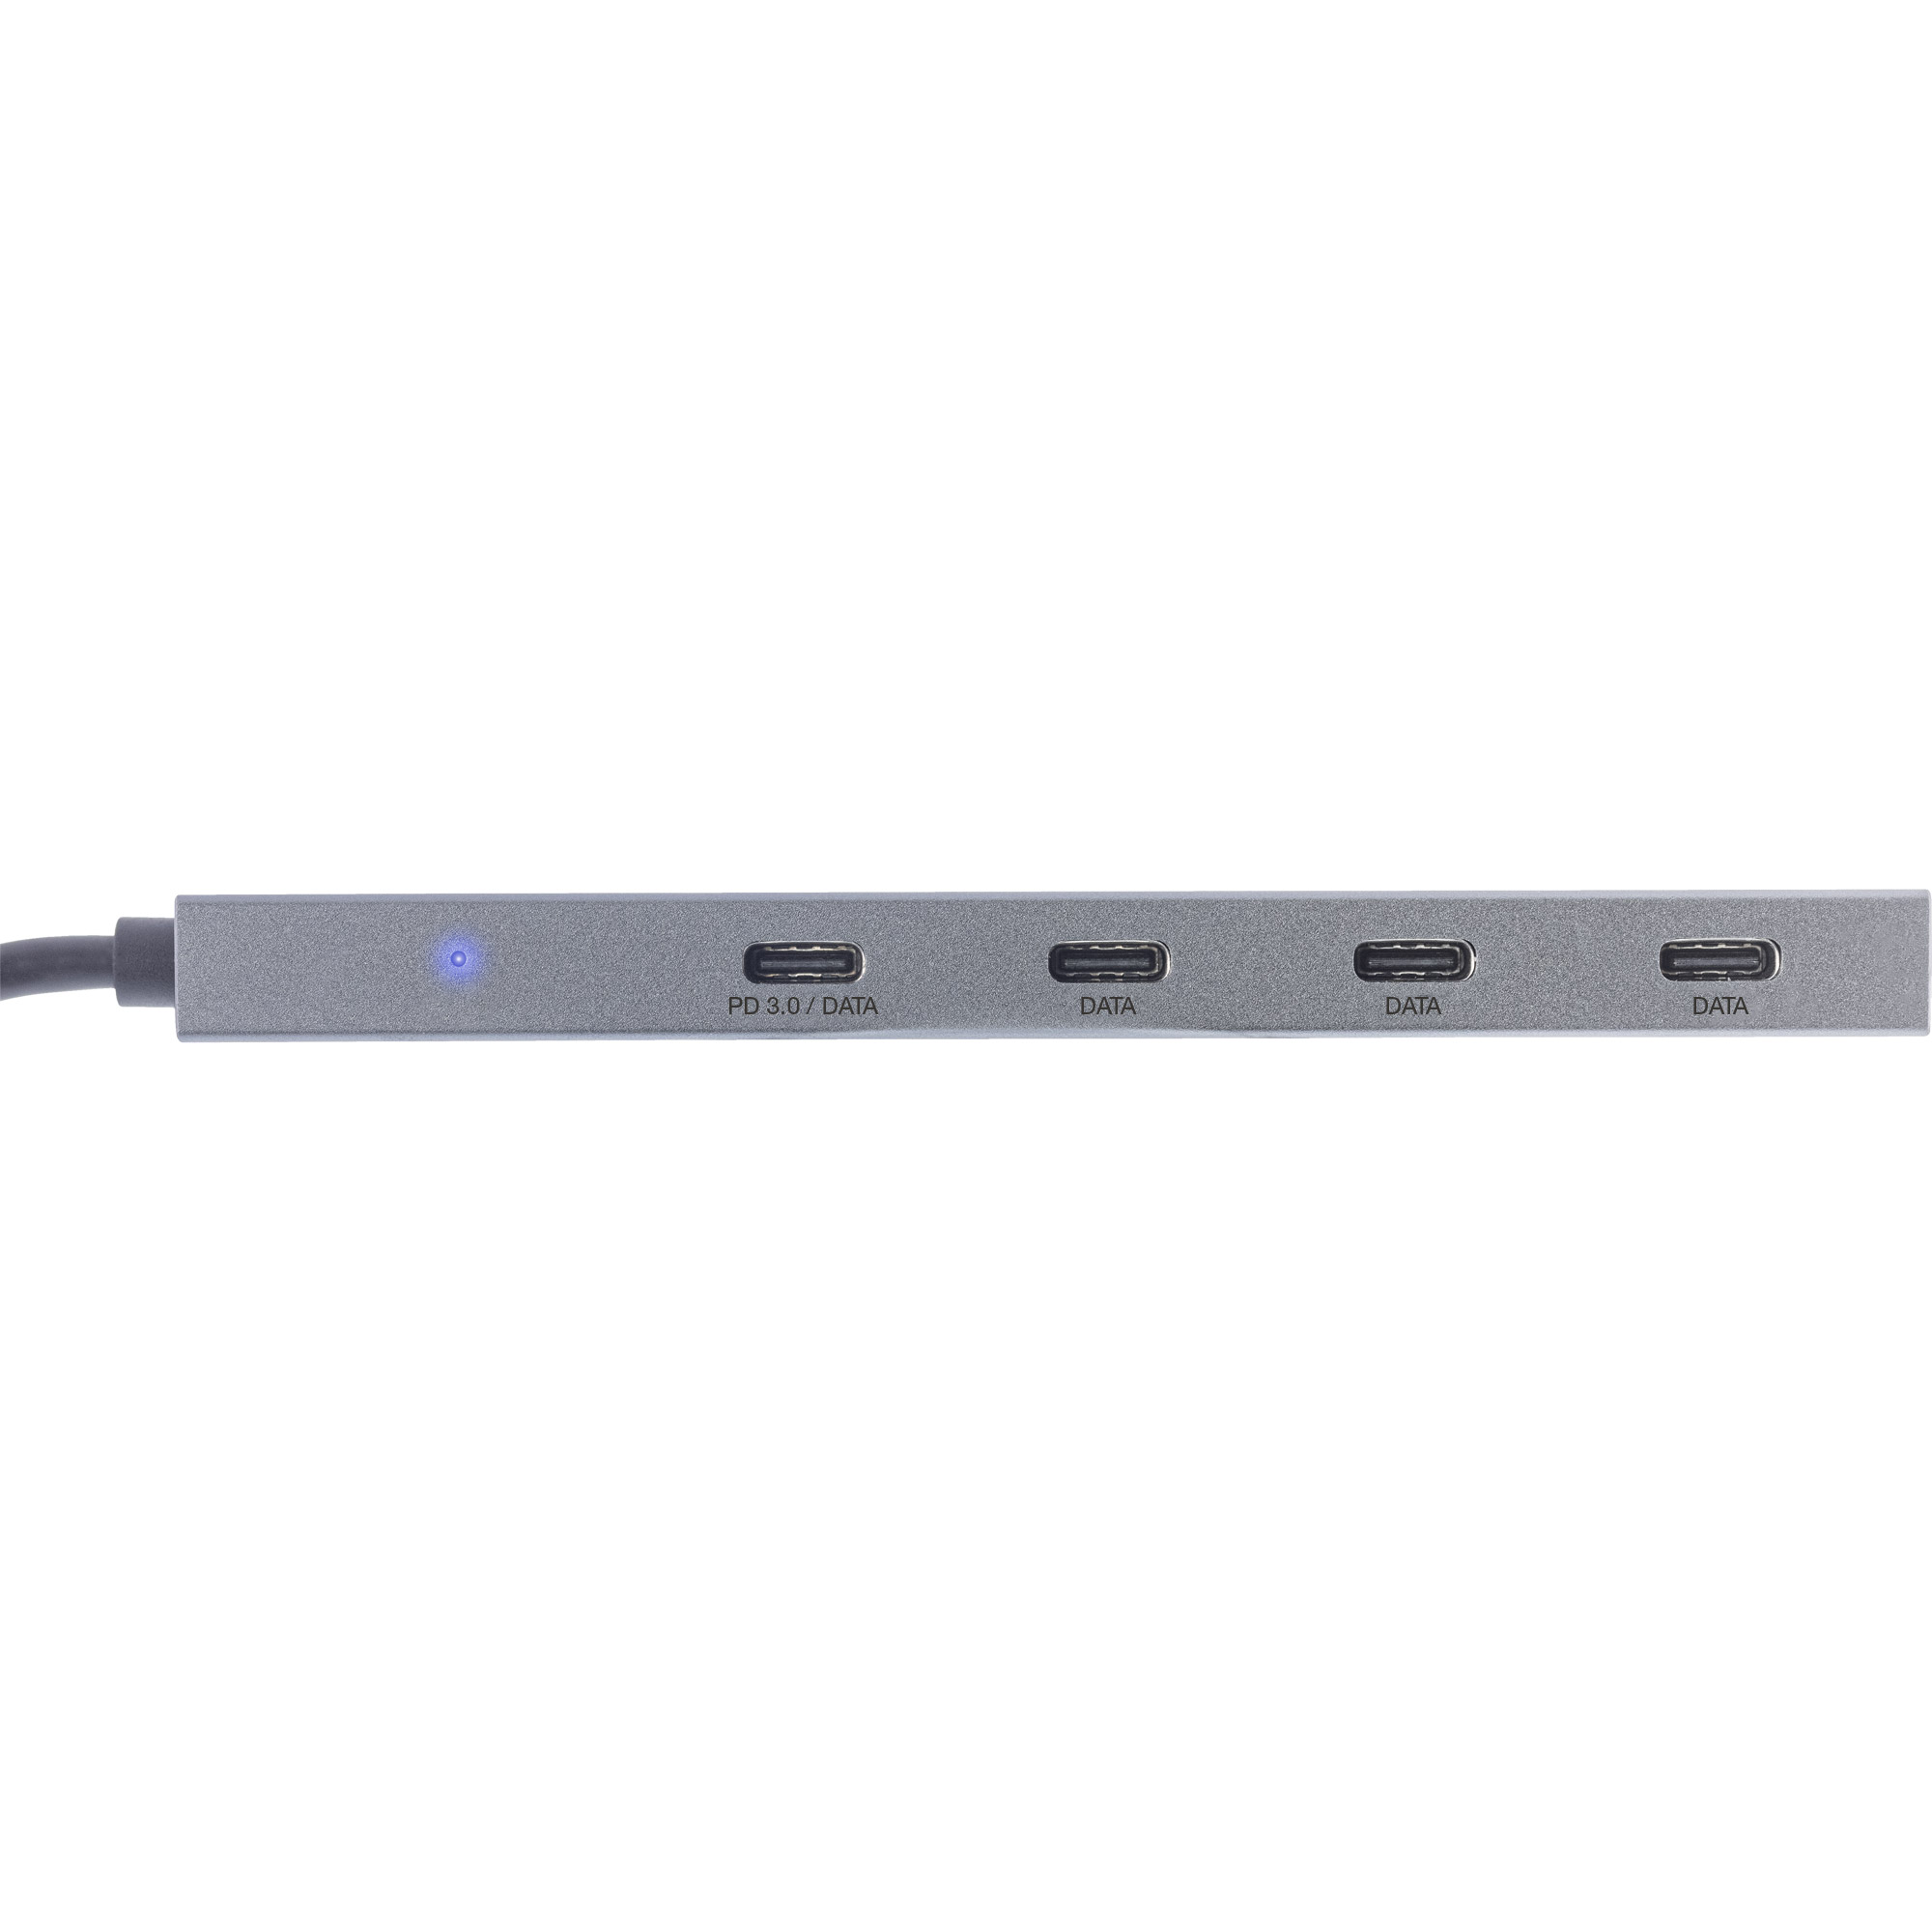 InLine USB 3.2 Hub USB Typ-C 35392B ☆ günstig